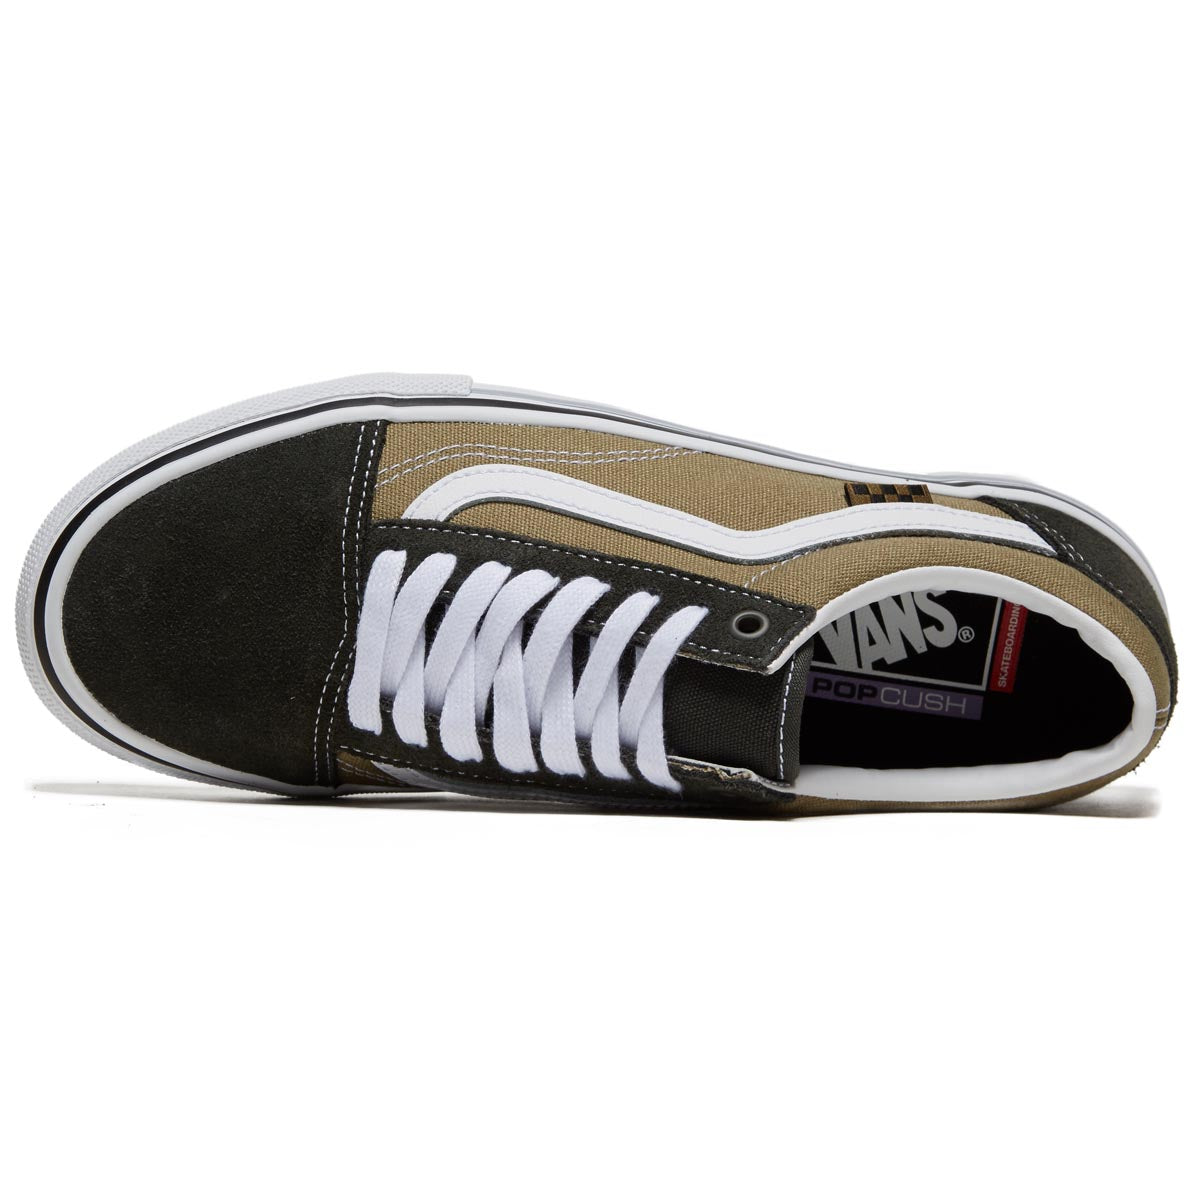 Vans Skate Old Skool Shoes - Gothic Olive image 3